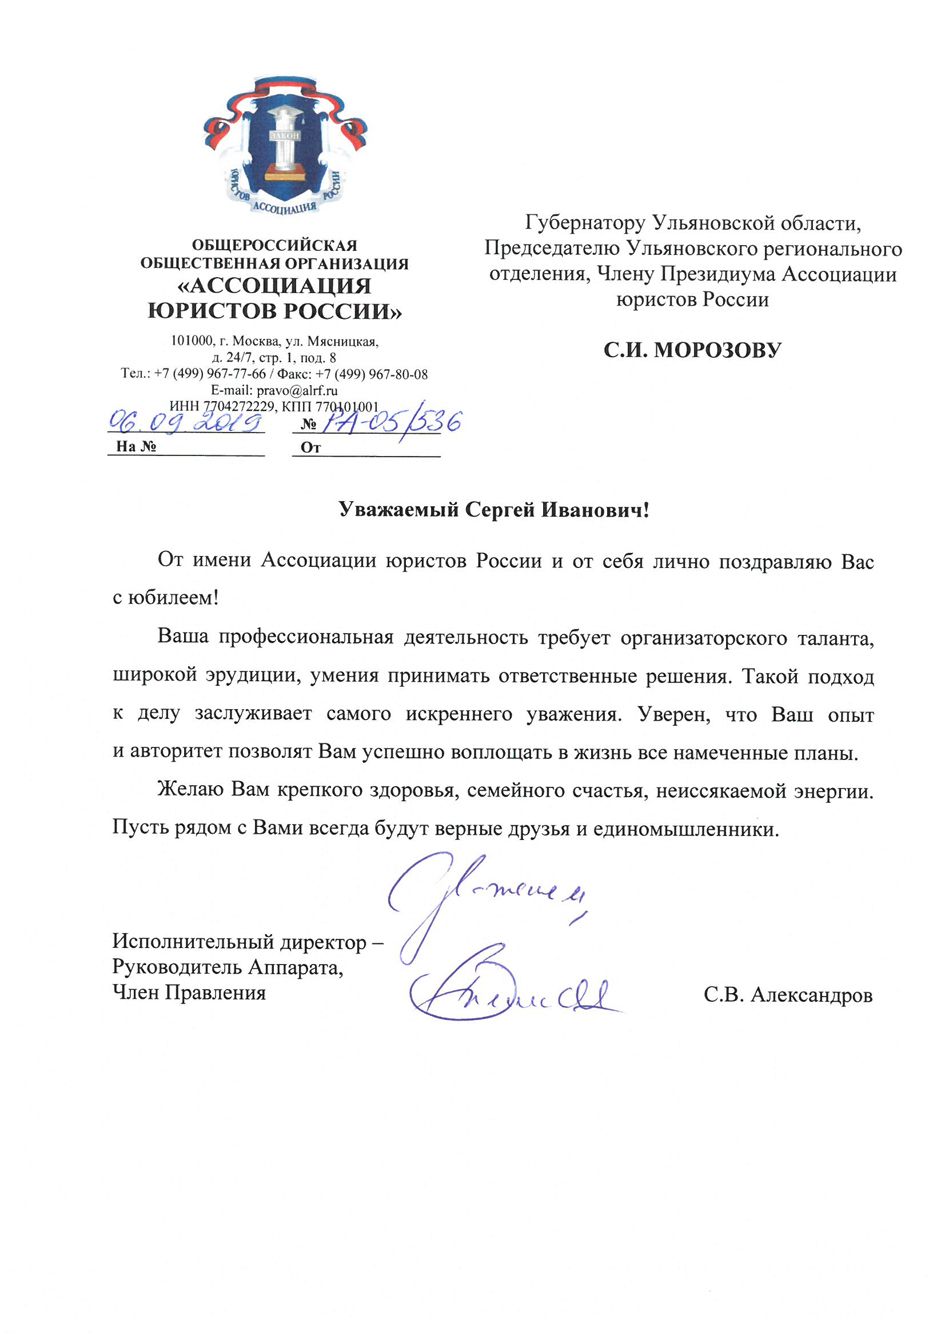 Поздравления со всей России: председателя реготделения АЮР Сергея Морозова чествуют коллеги-юристы